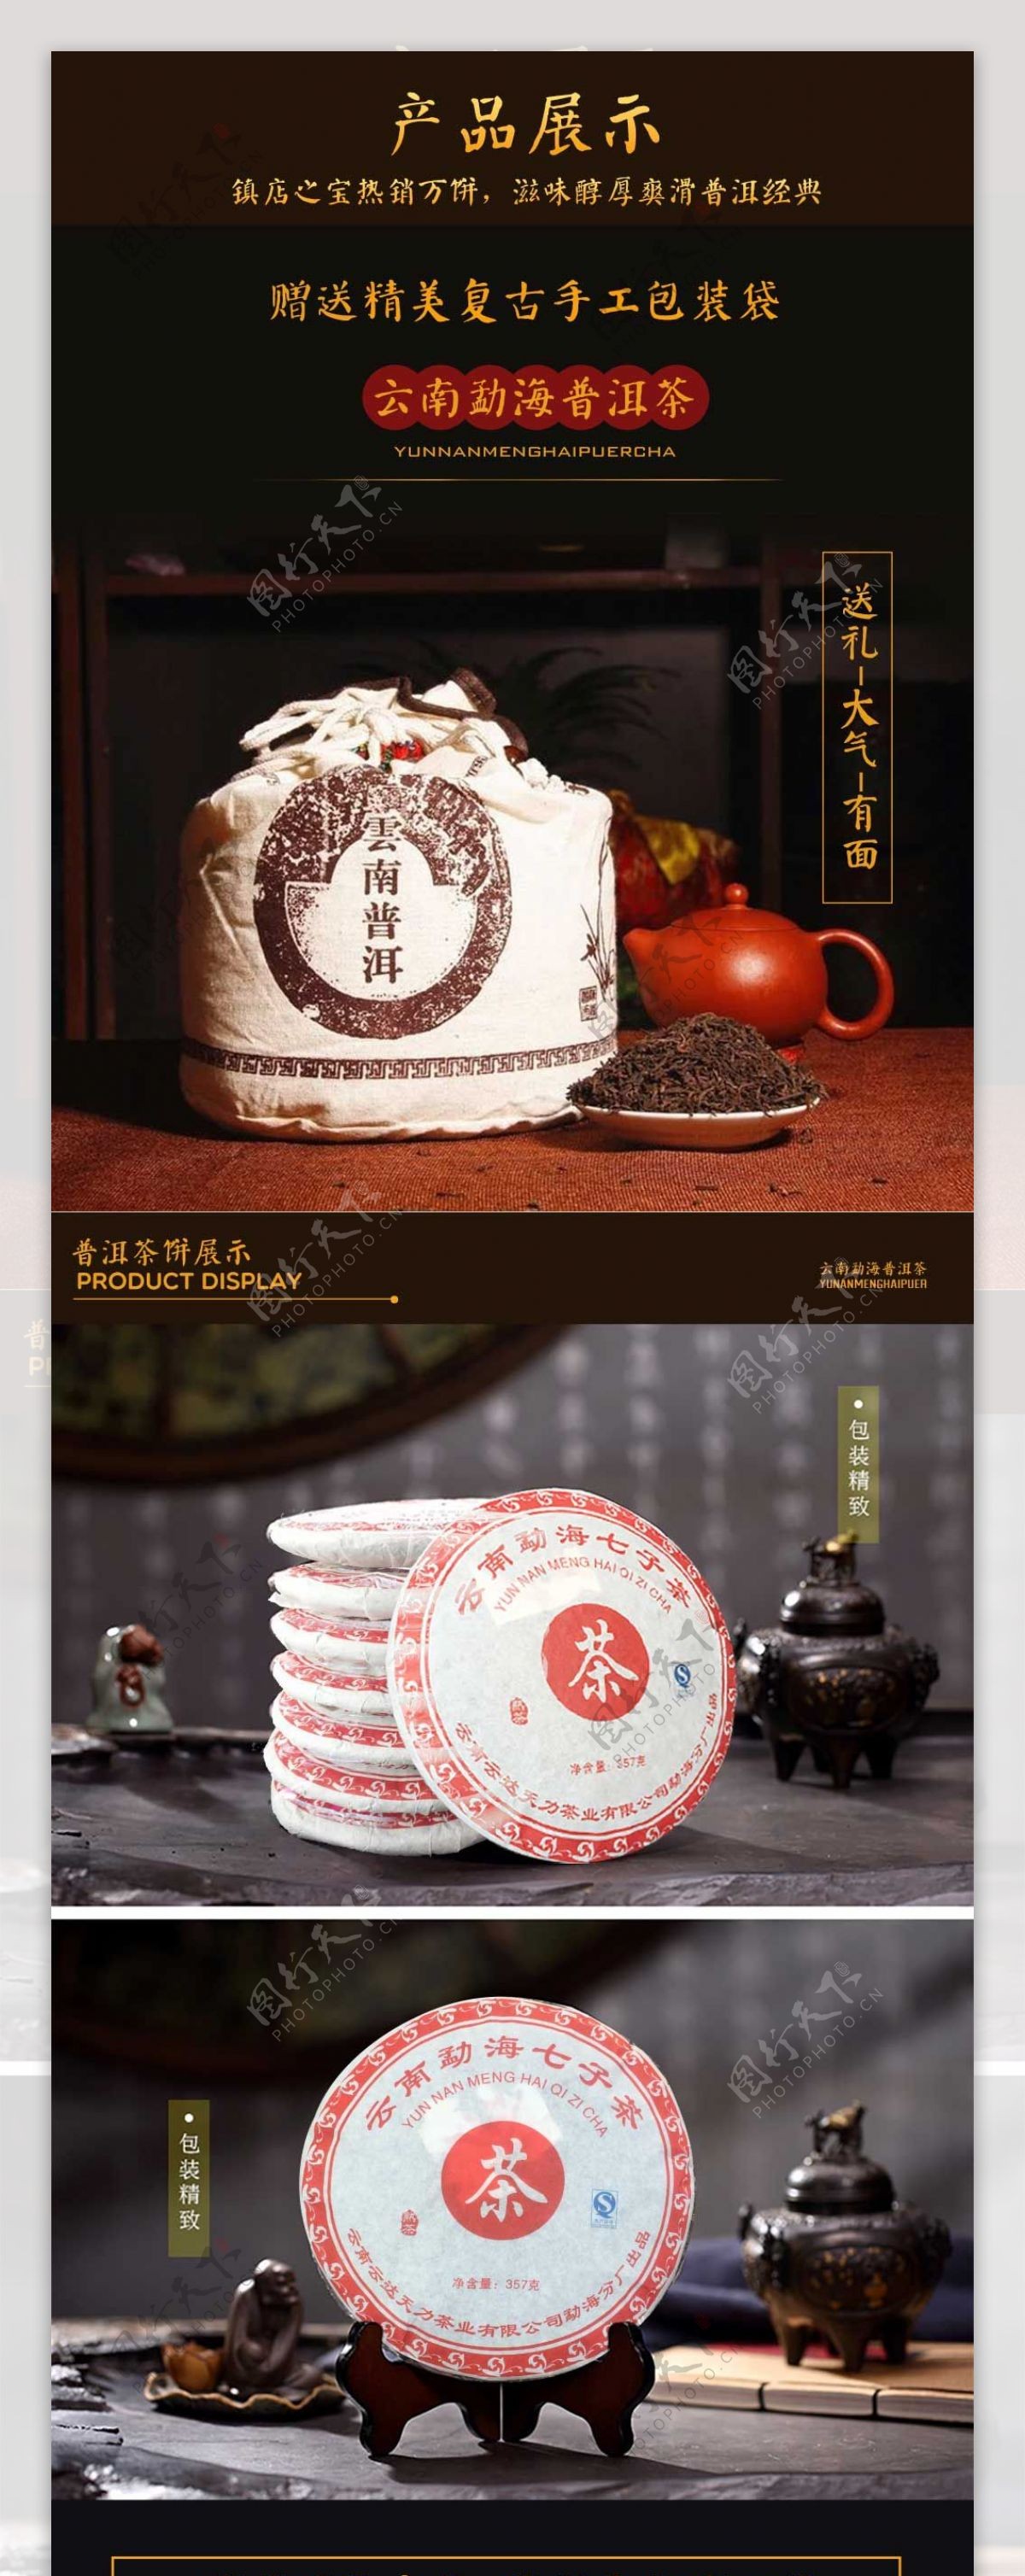 电商淘宝活动大促醇香普洱茶产品展示中国风茶叶详情页